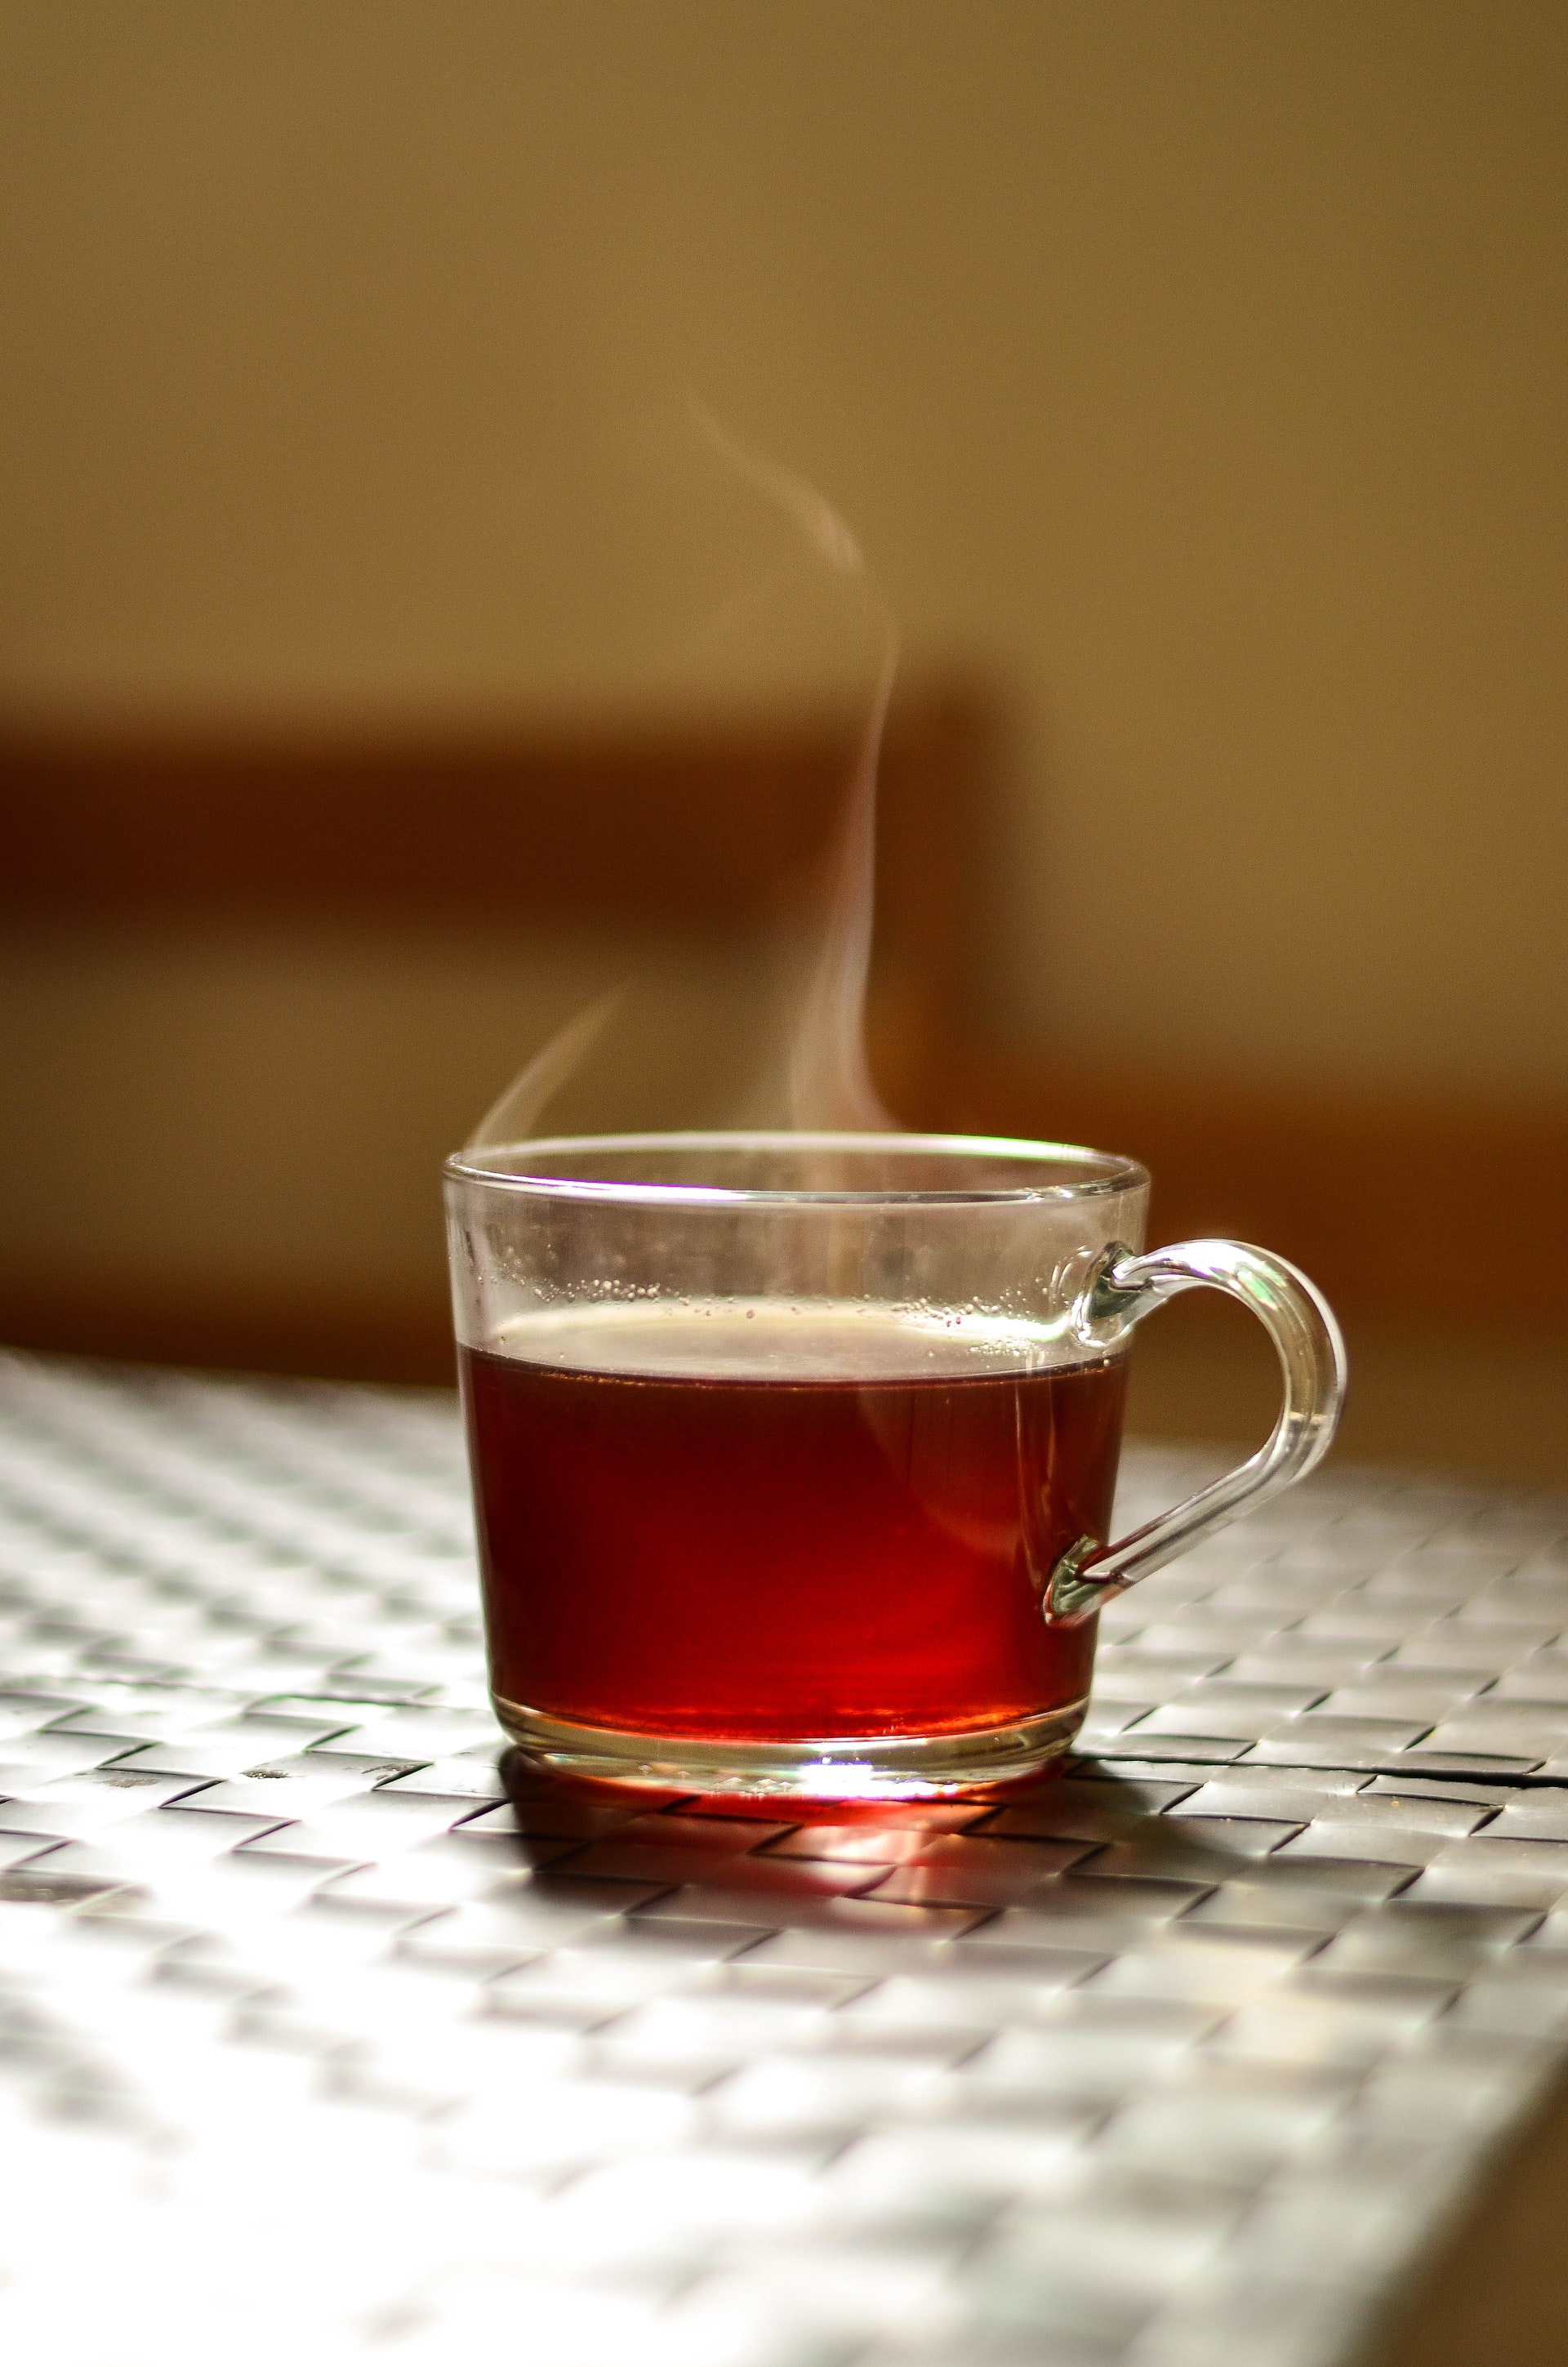 A cup of tea | Source: Pexels